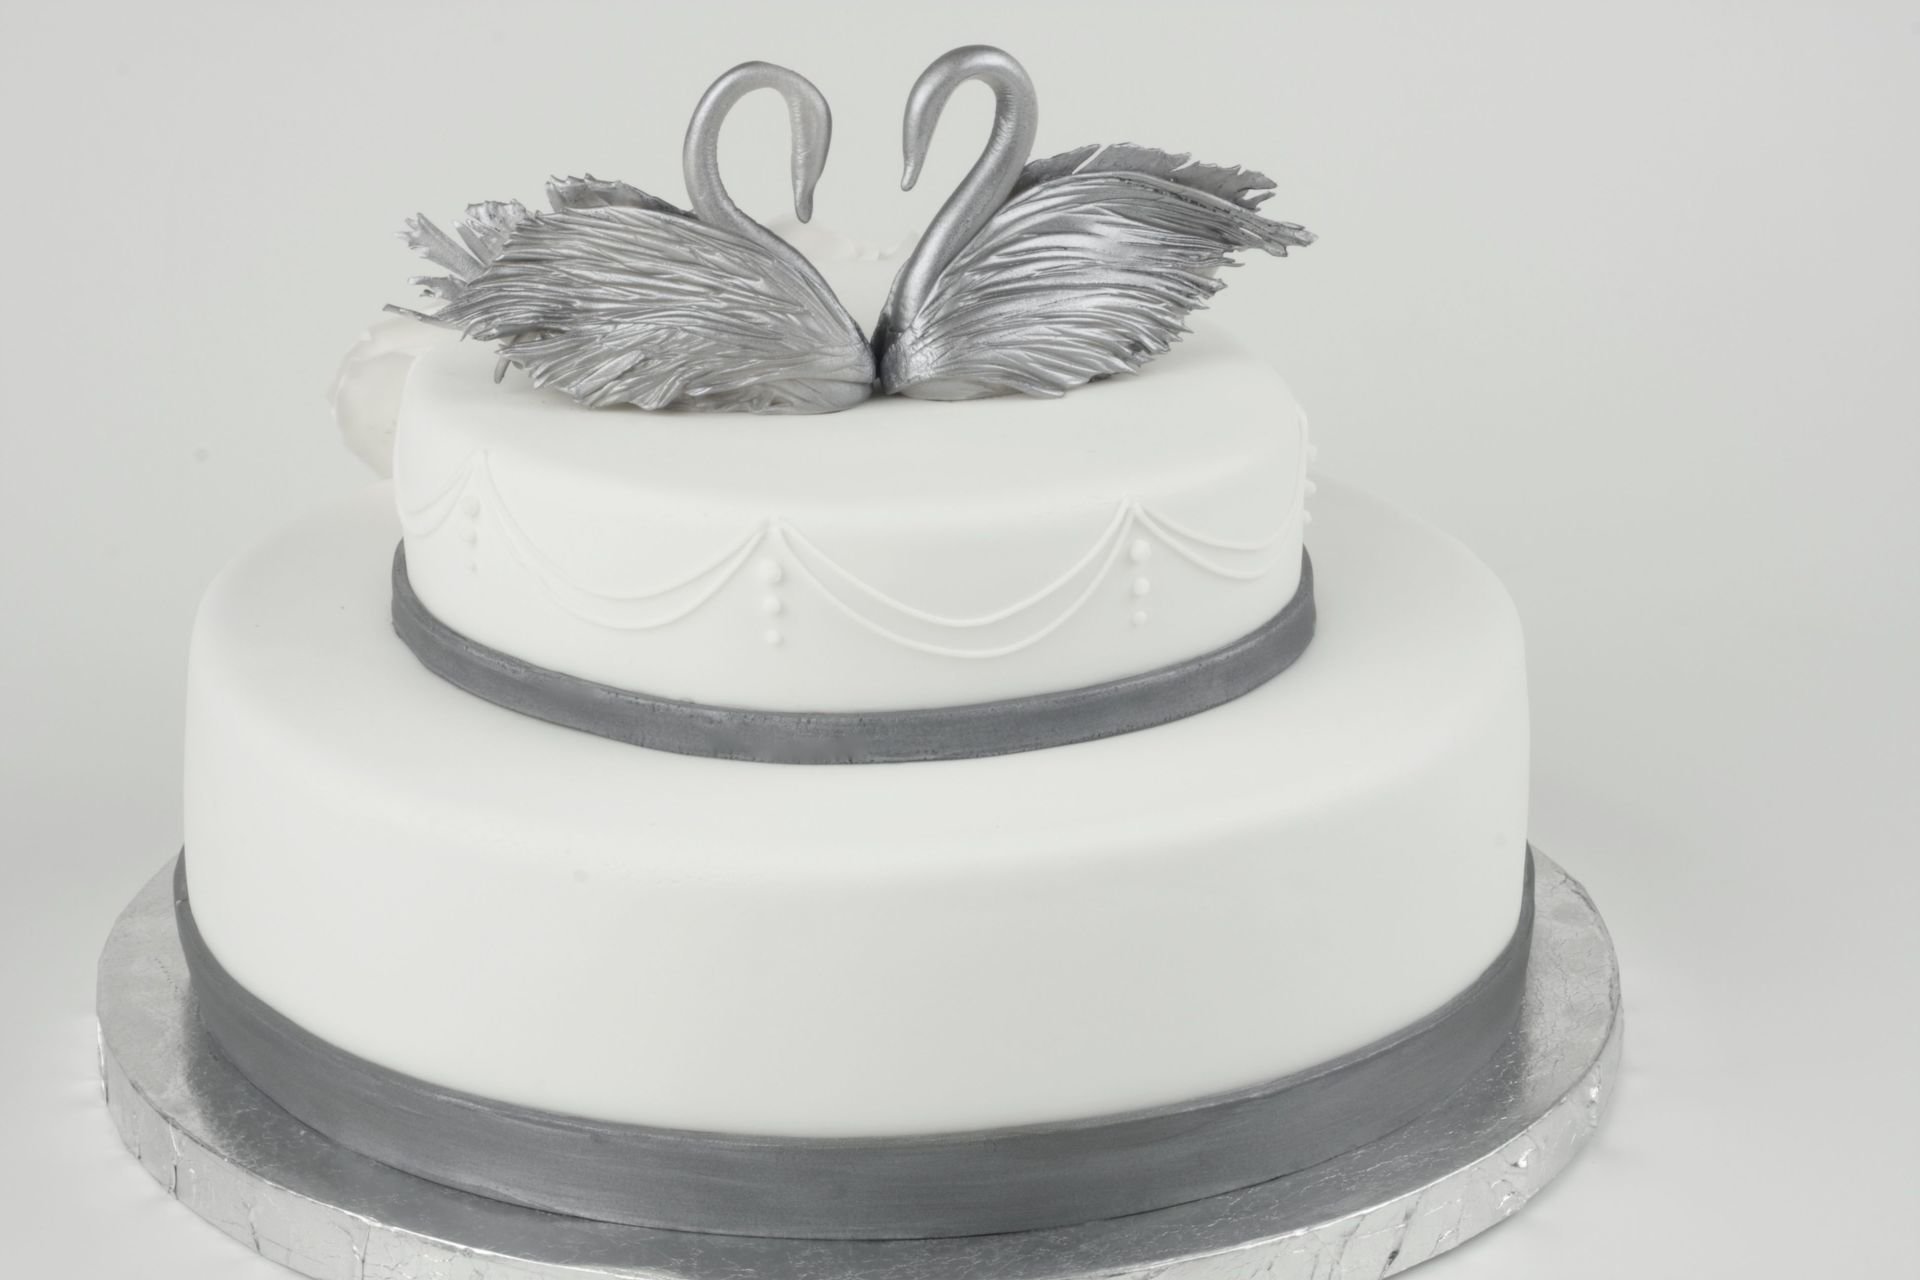 8 лет свадьбы торт фото